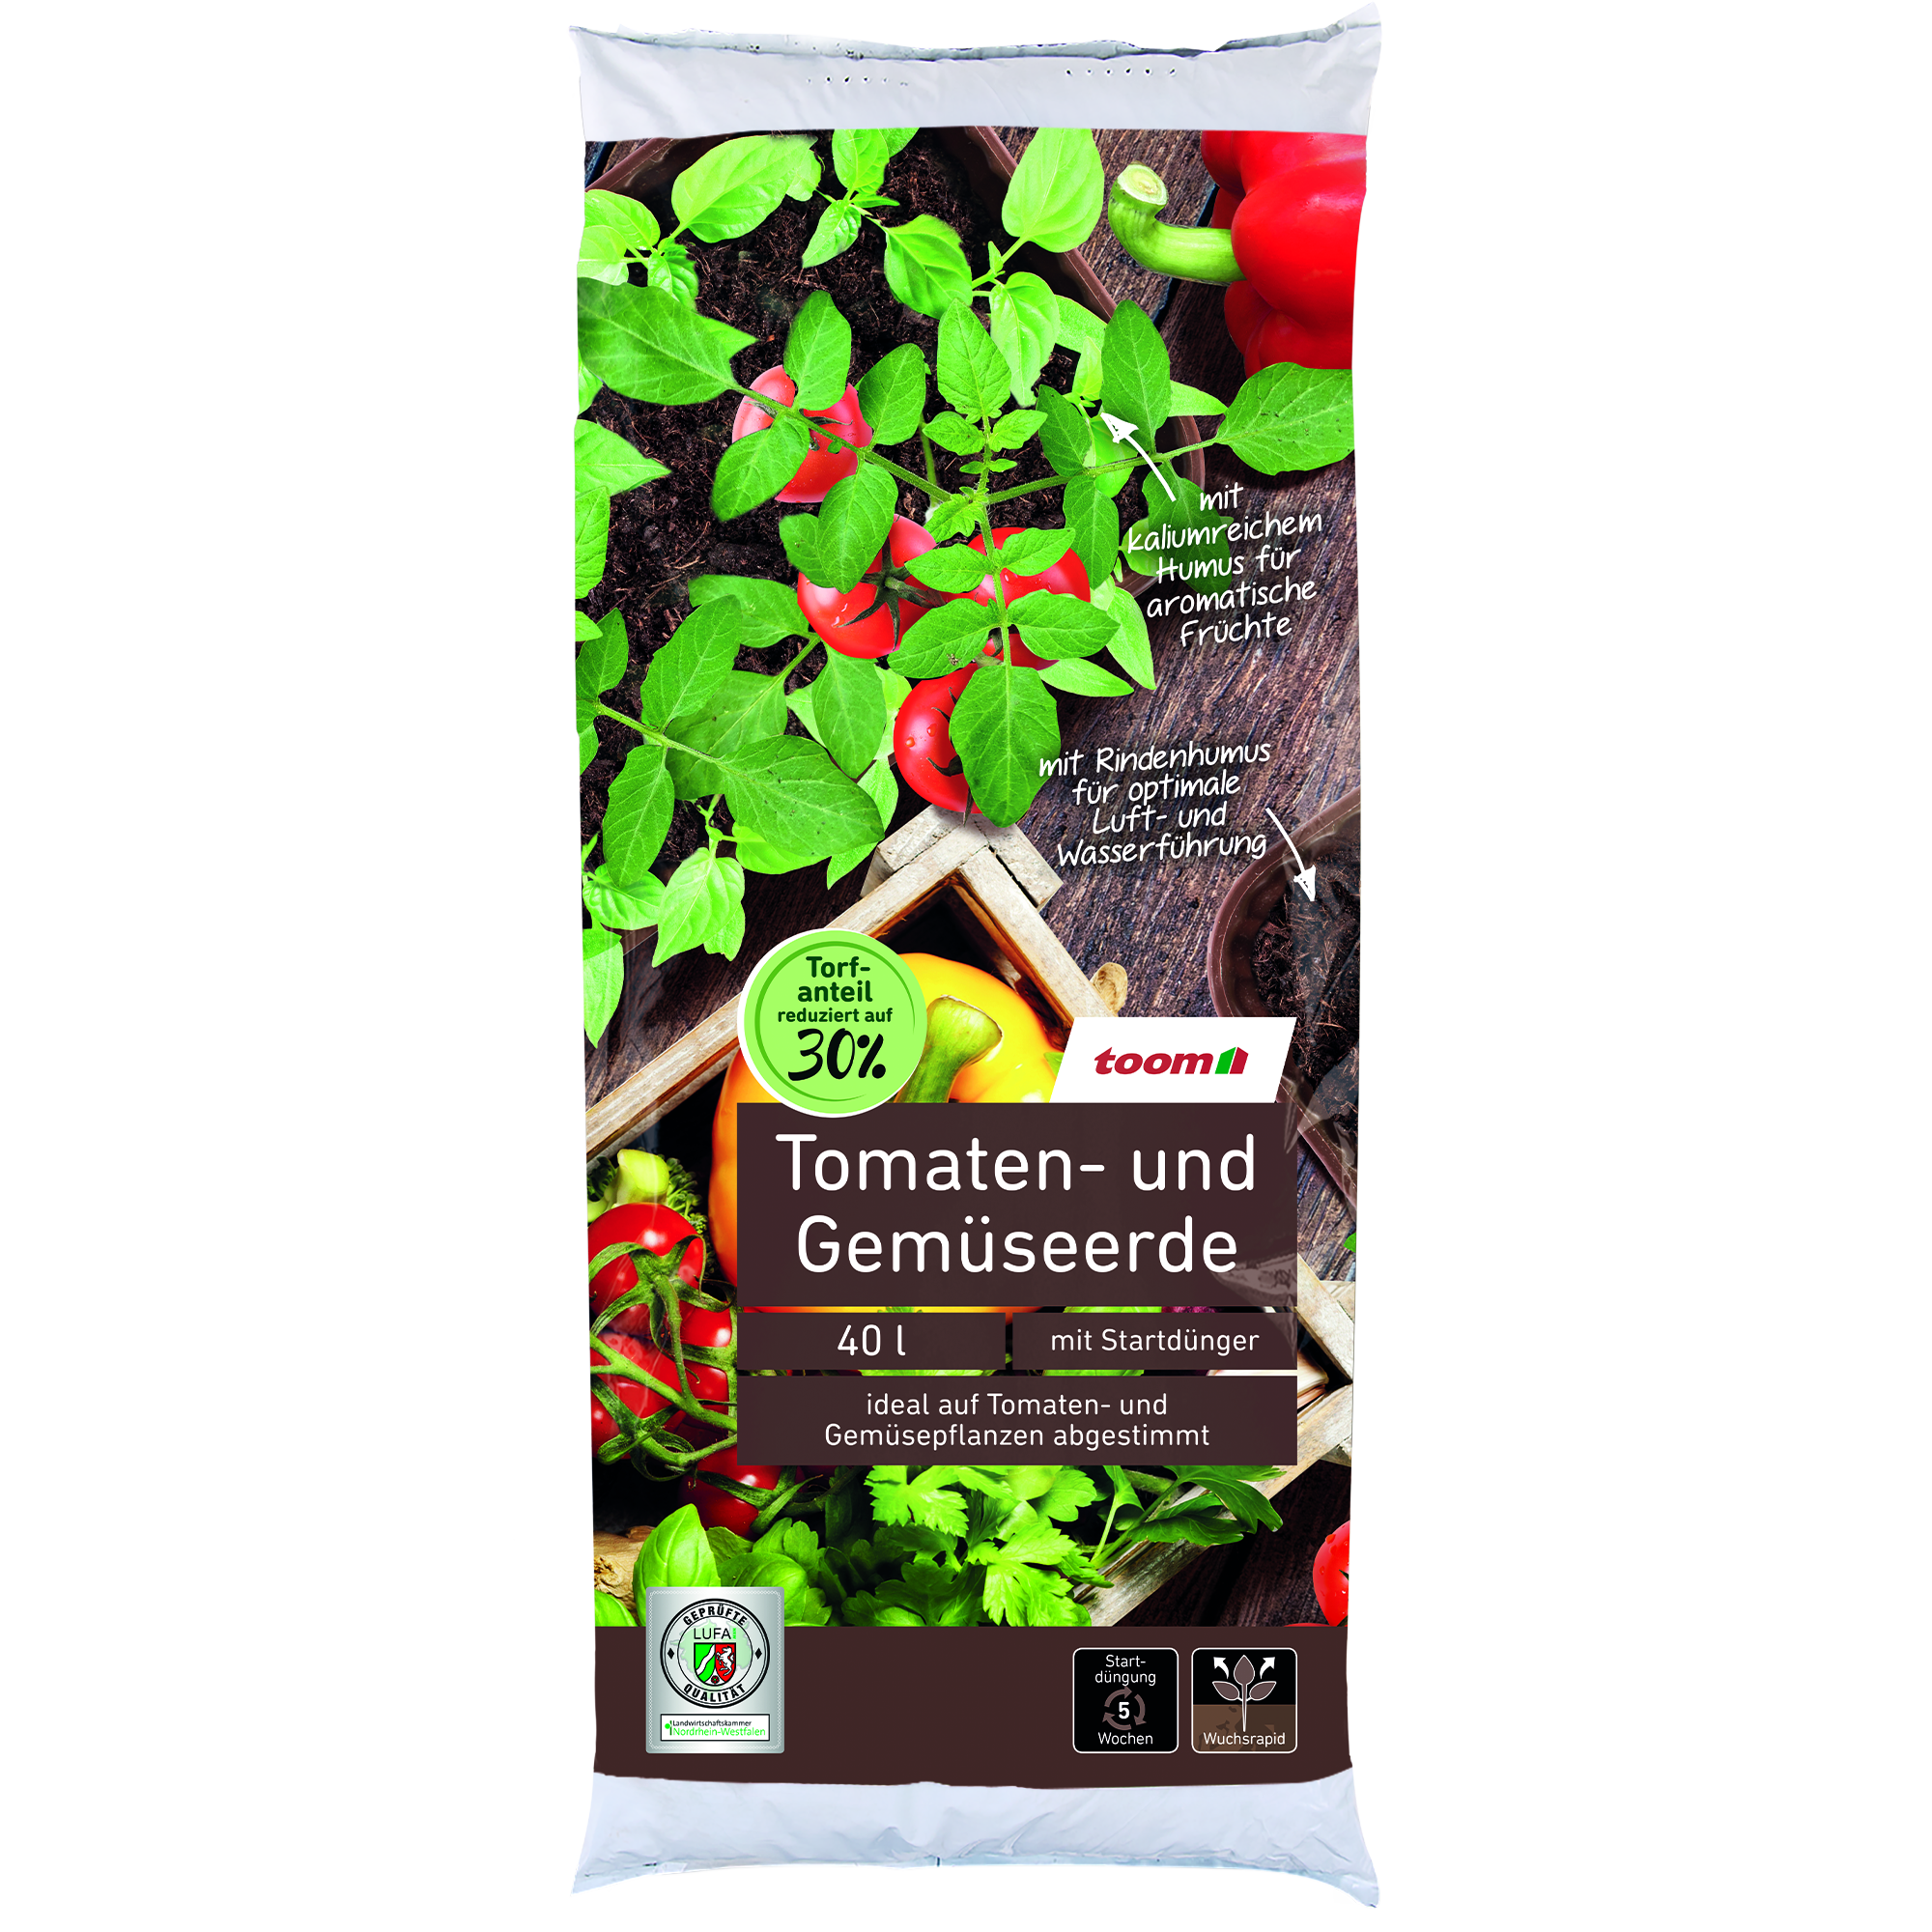 Tomaten- und Gemüseerde 40 l + product picture